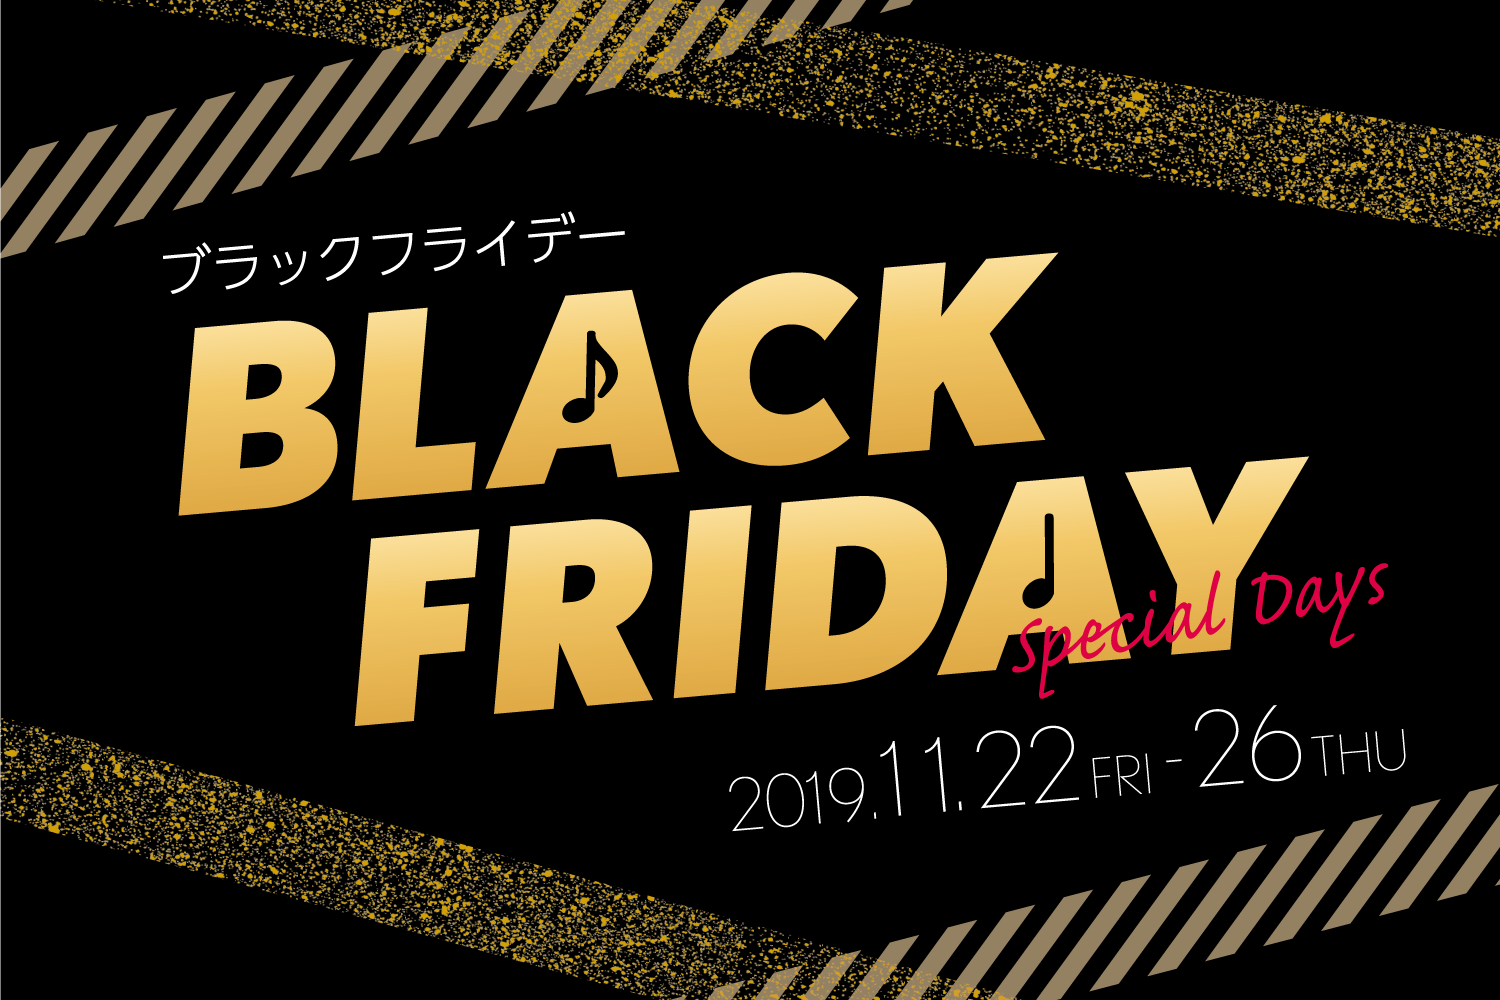 *-BLACK FRIDAY- 特別フェア開催のお知らせ ブラックフライデーとは・・・？ 11月の第4木曜日（感謝祭）の翌日にあたる日。 欧米では小売店などで大規模な安売りが実施され、買い物客が殺到して小売店が繁盛することで知られ1年で最も売り上げを見込める日とされており日本でも近年このタイミングで […]